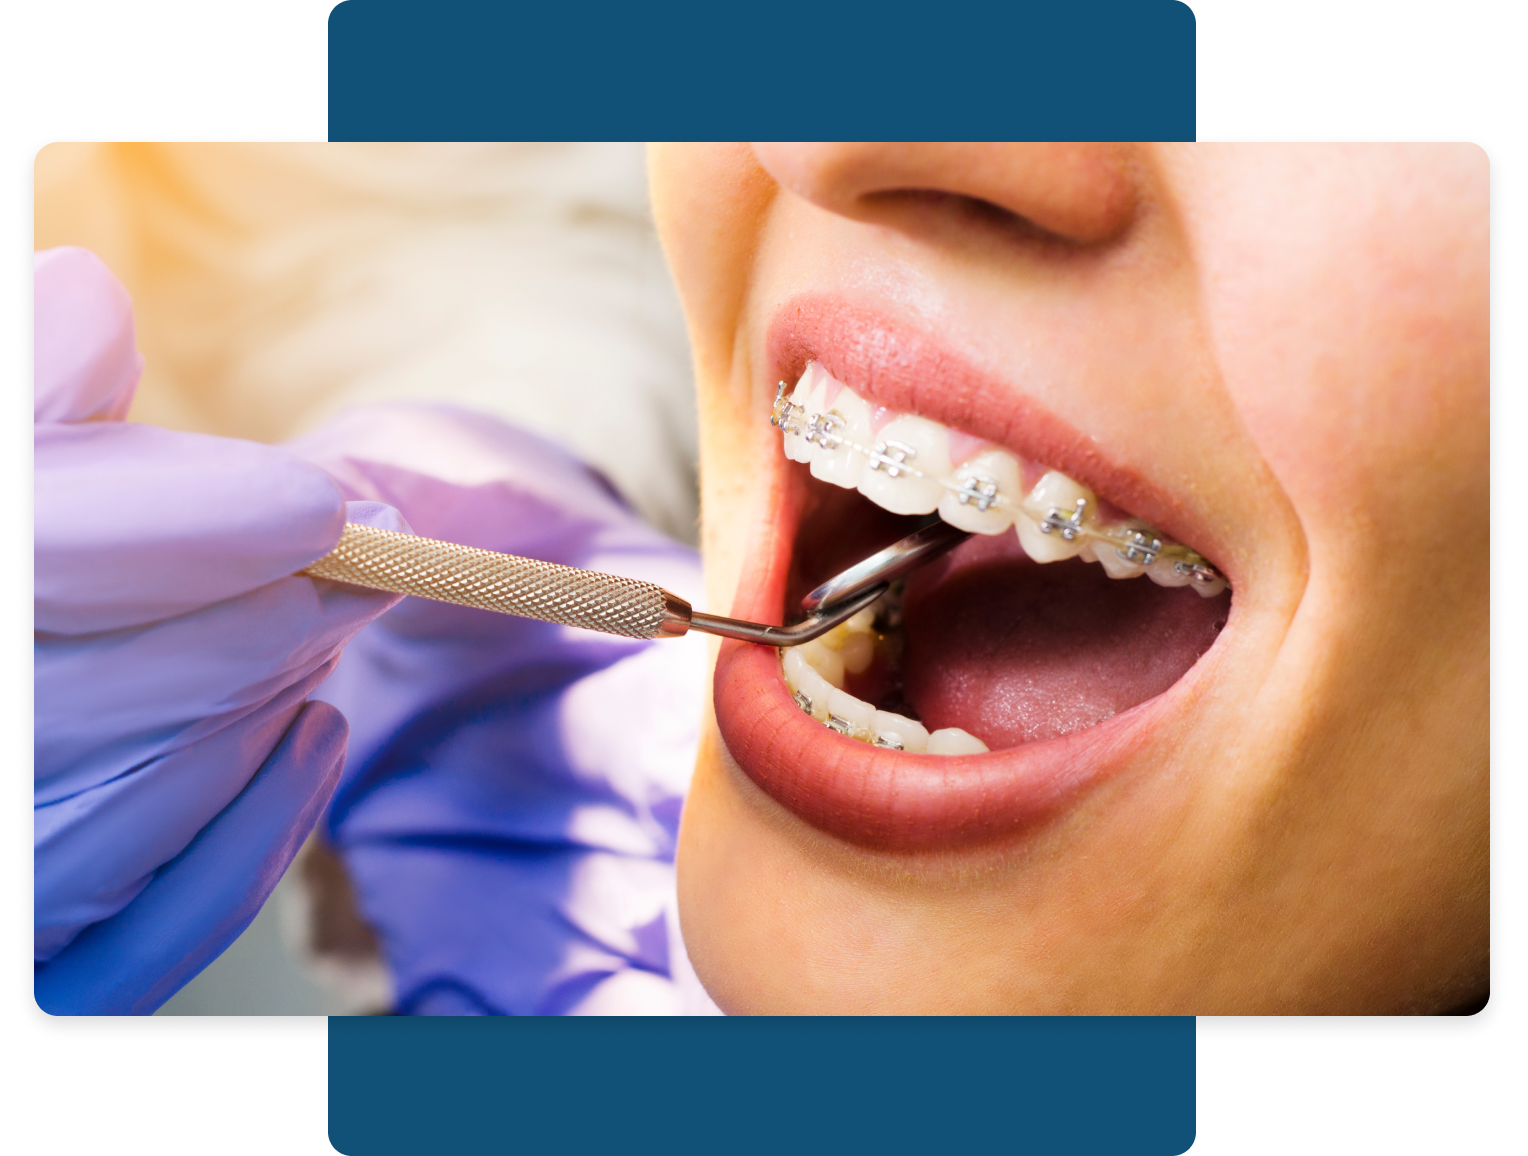 Izmir Orthodontics